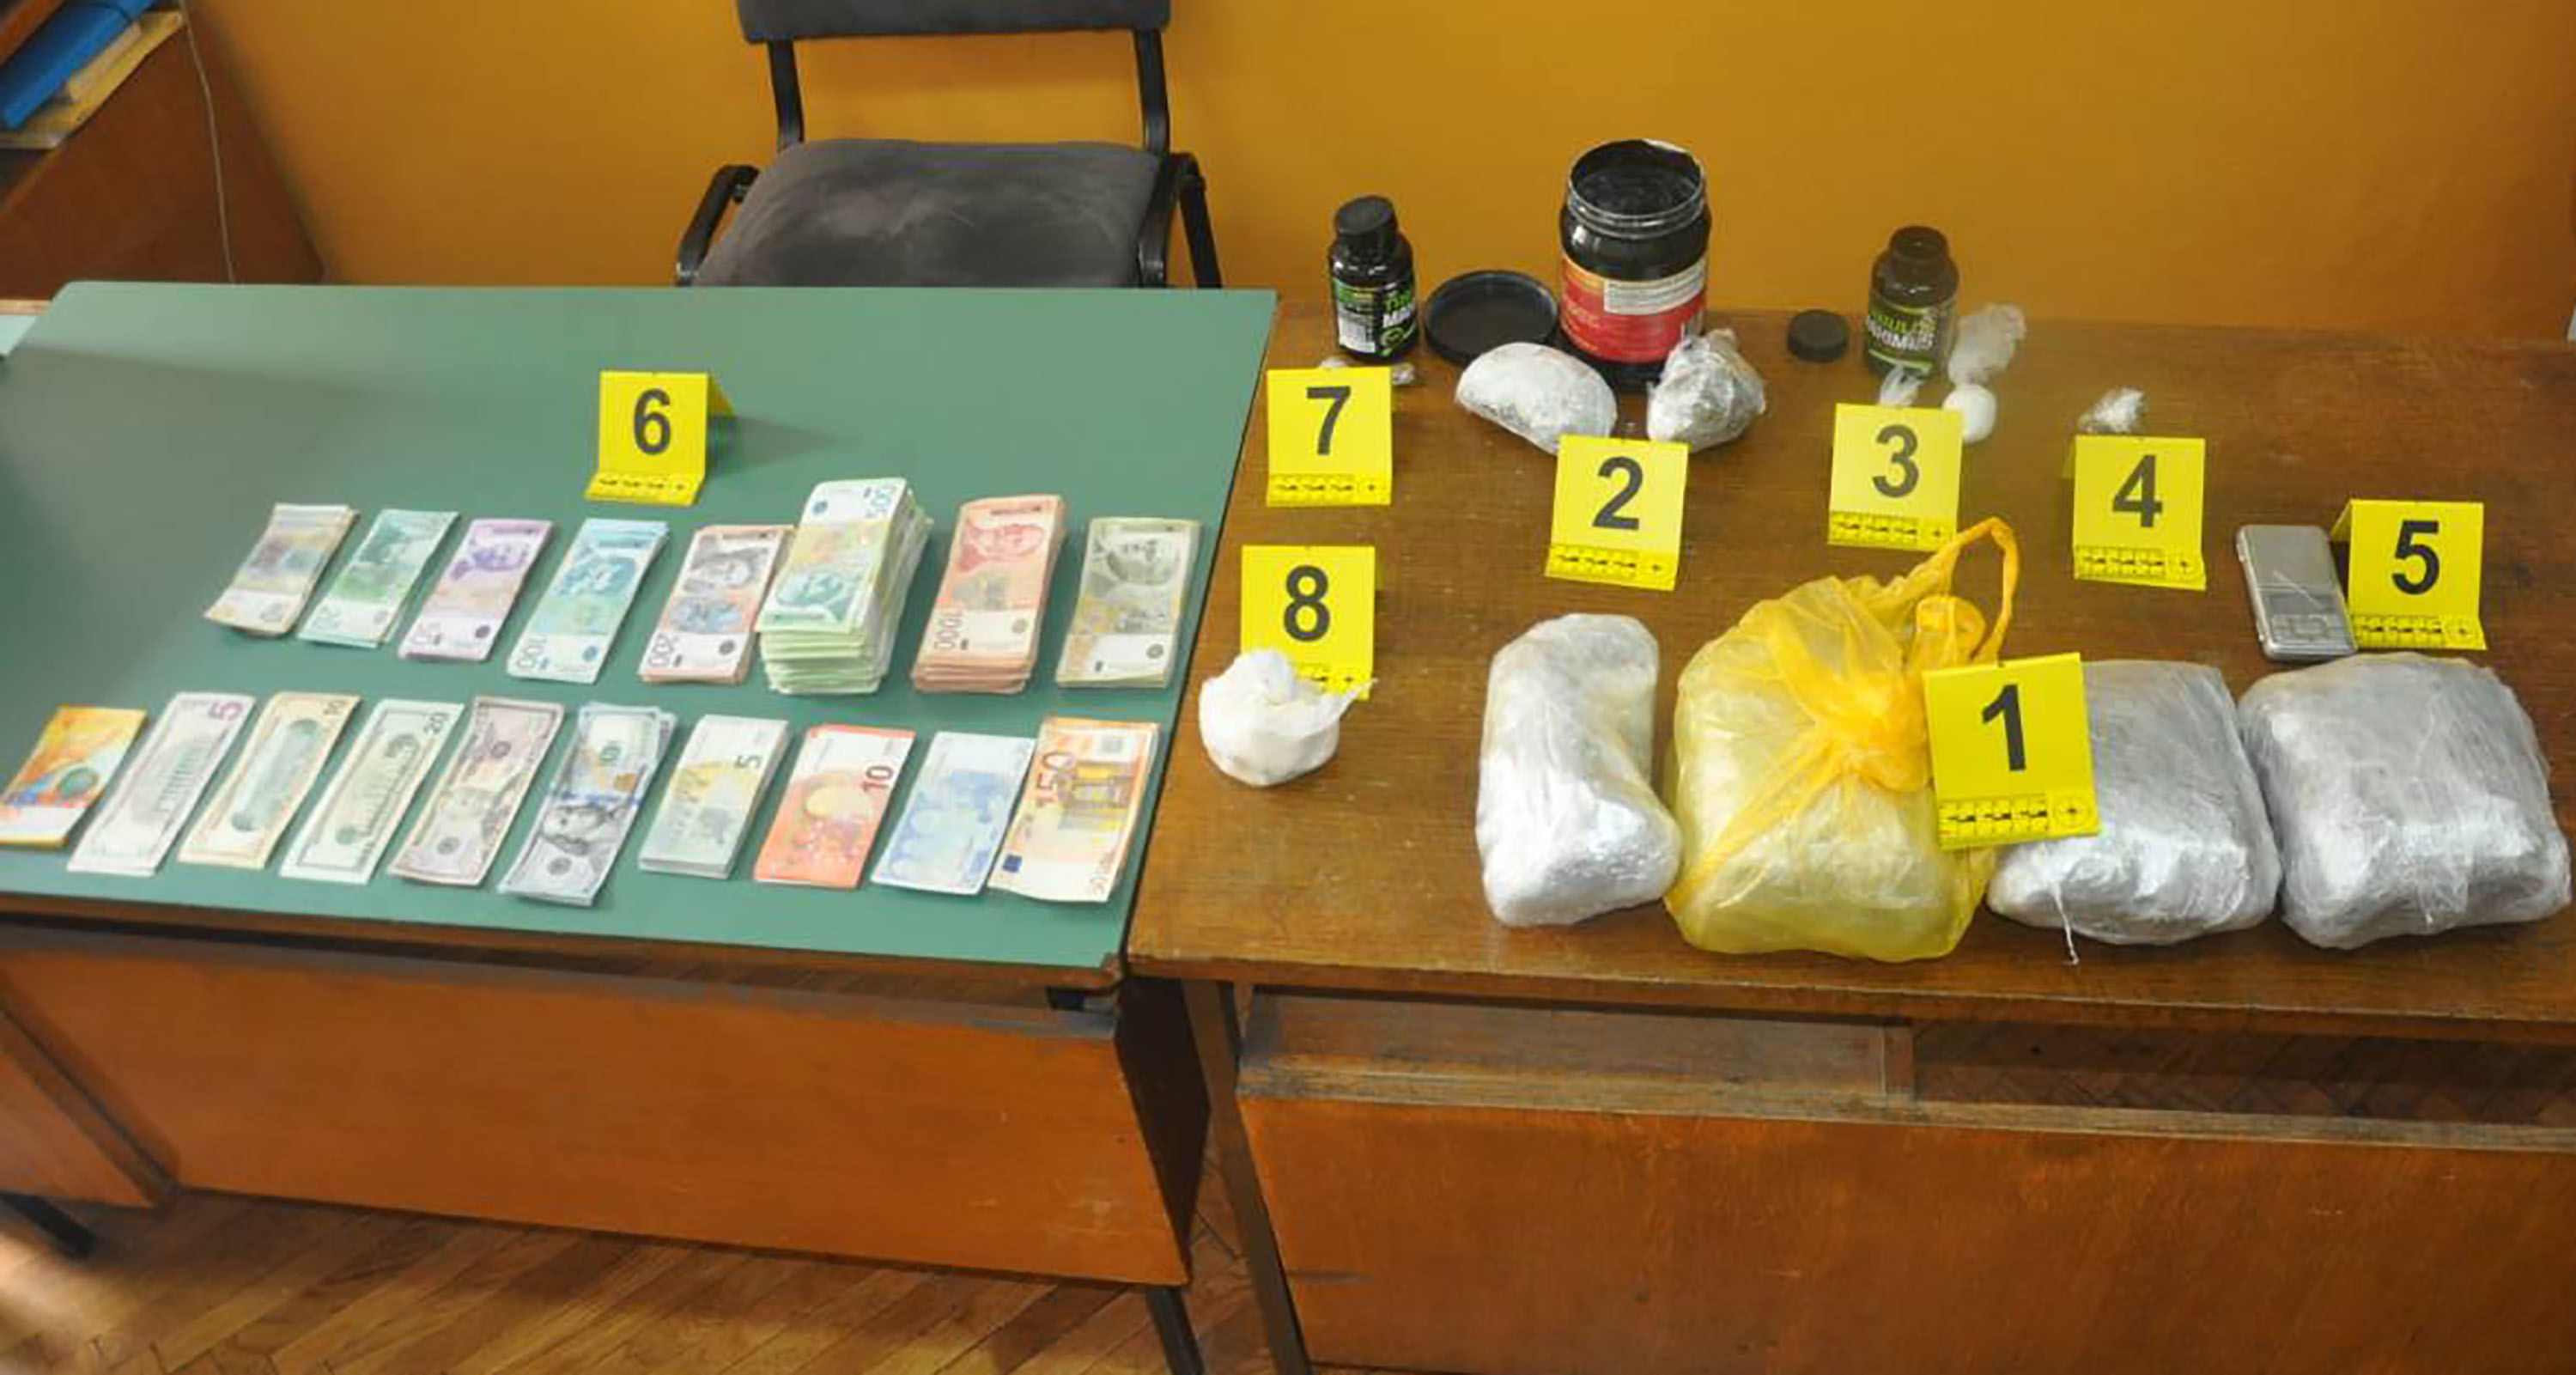 Policija u odvojenim akcijama uhapsila 41 osobu i zaplenila veću količinu različitih vrsta droga